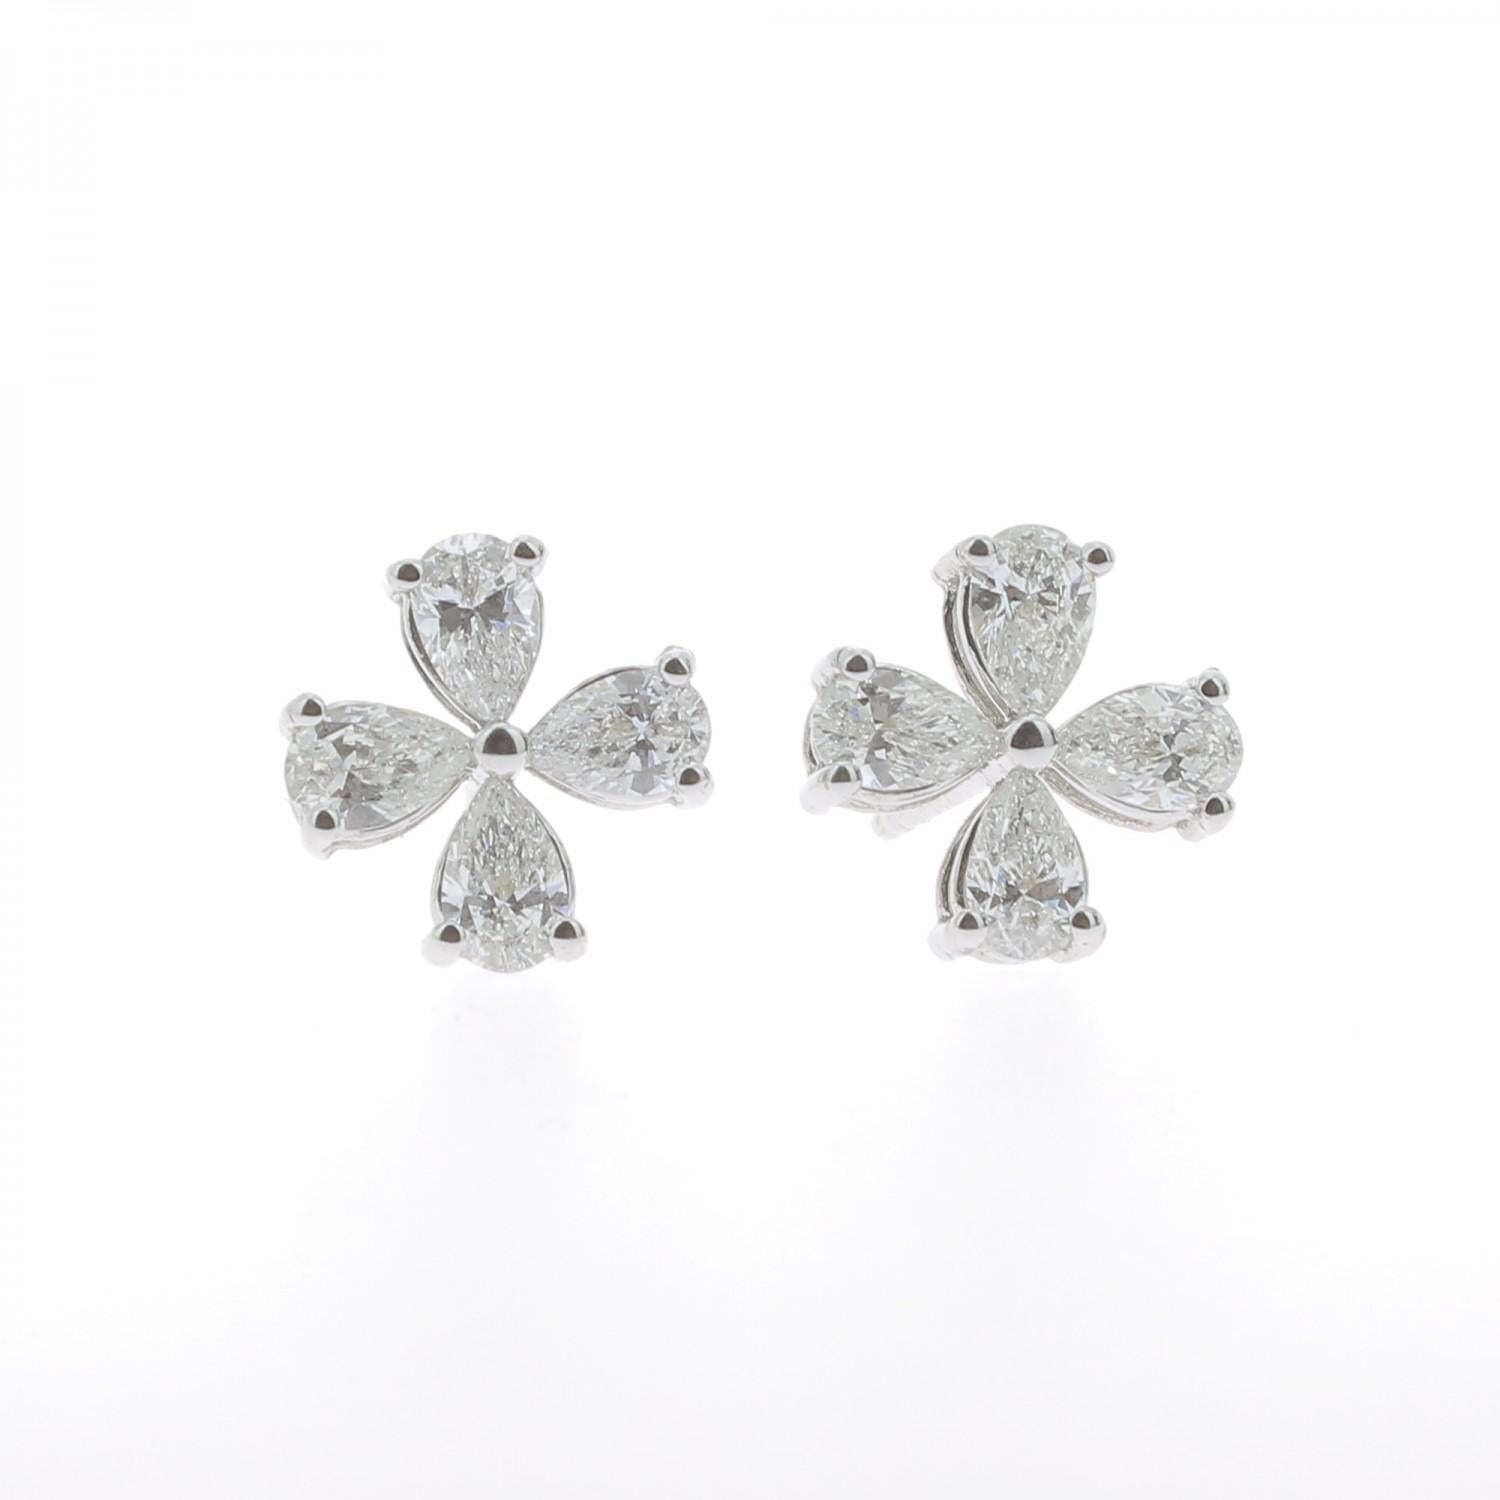 Die Clover Diamonds Ohrringe sind mit 8 birnenförmigen Diamanten mit einem Gewicht von 1,20 Karat besetzt und haben ein Kleeblattmuster.
Die Birne Diamant Ohrringe sind 18K Weißgold gesetzt und Gewicht 2,66 Gramm.
Die Diamant-Ohrstecker werden in